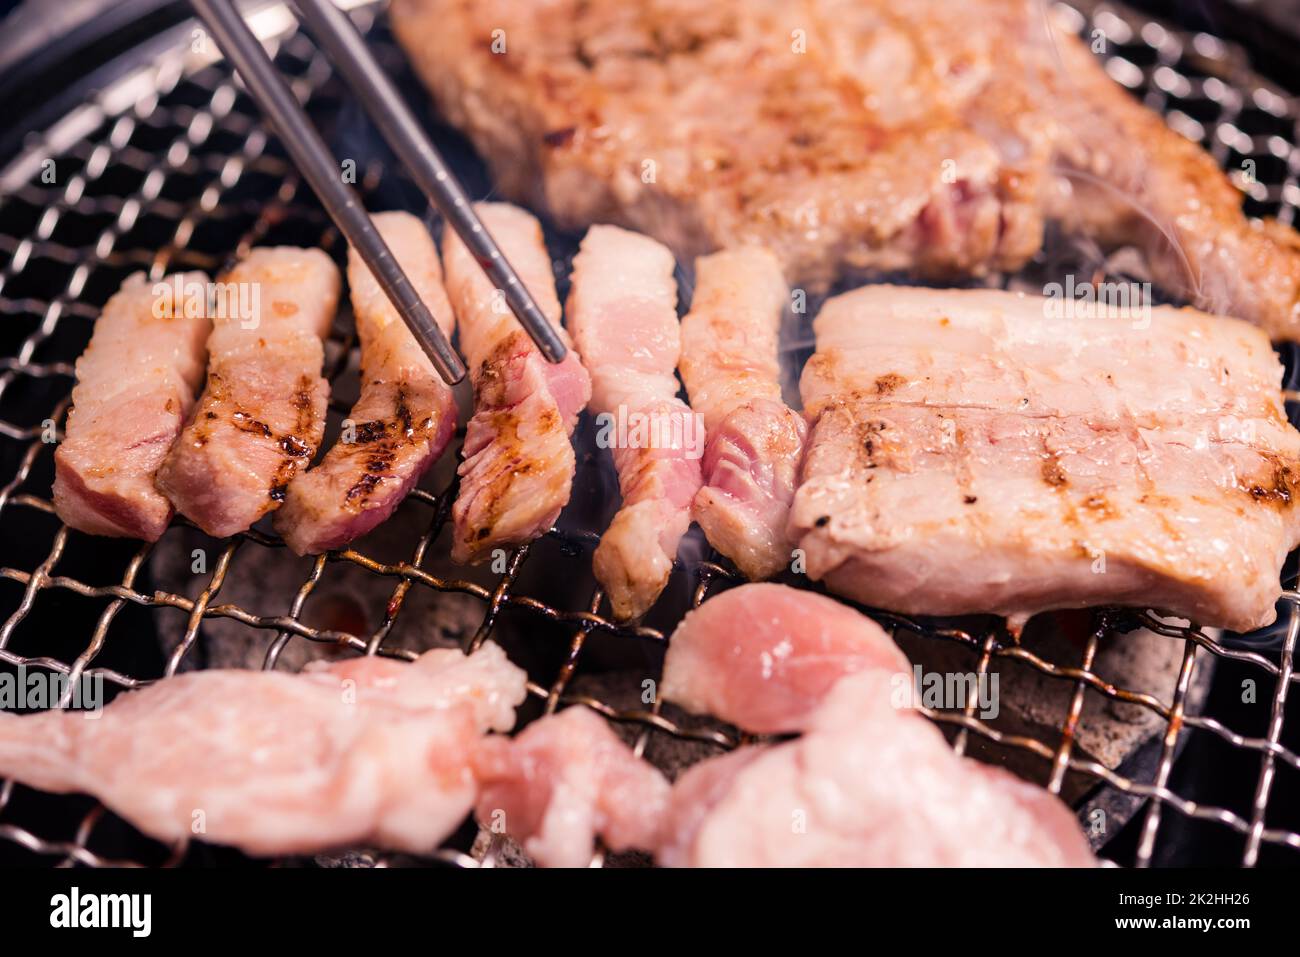 Griller de la viande de porc Coréen BBQ traditionnel sur cuisinière servir dans le restaurant Banque D'Images